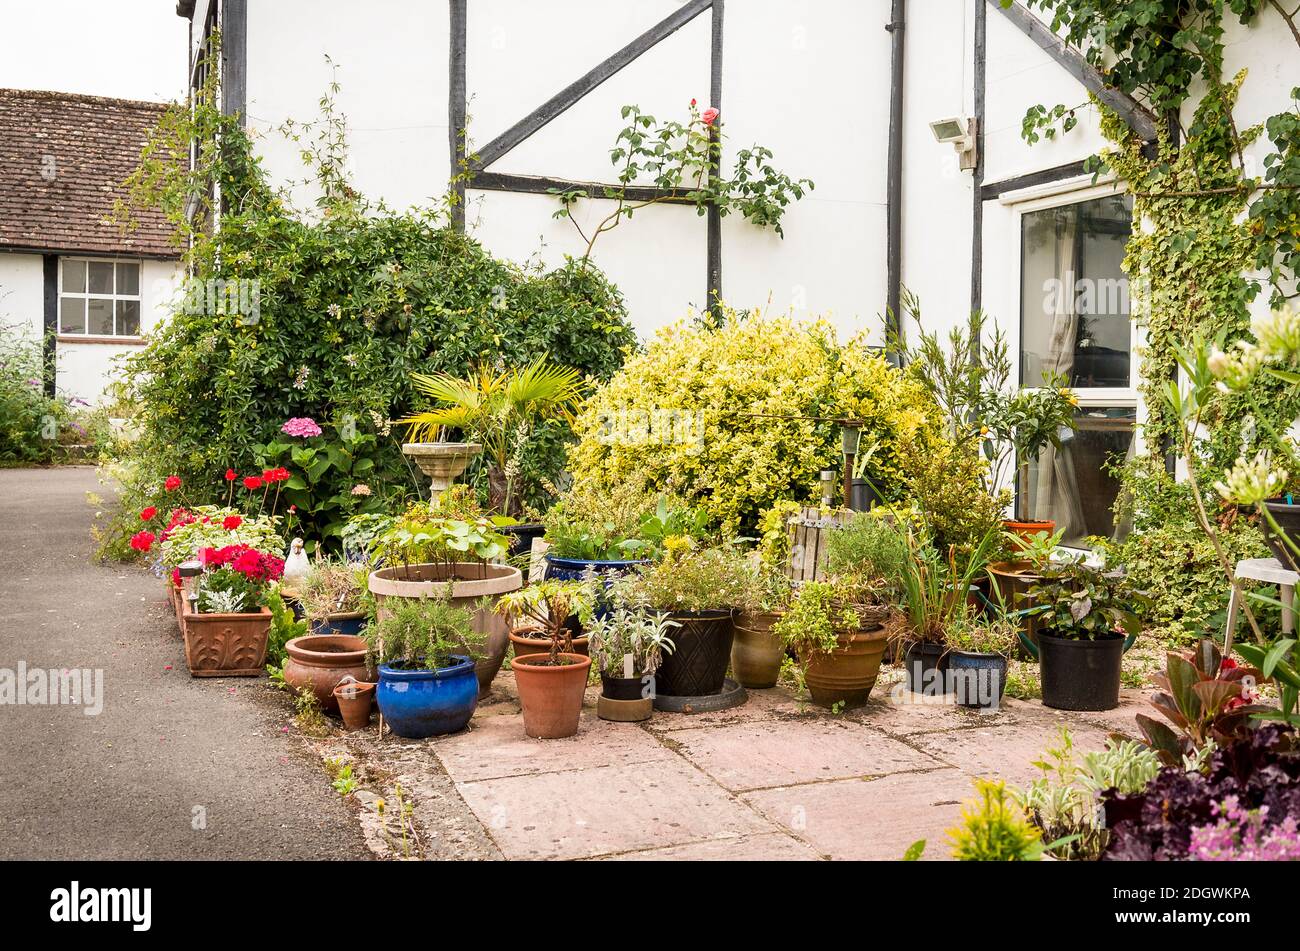 Ein kleiner Terrassengarten durch eine umgebaute viktorianische Farmscheune Bauen mit einer Mischung aus gemischten Pflanzen mit Töpfen und Pflanzer in einem englischen Garten in Summe Stockfoto